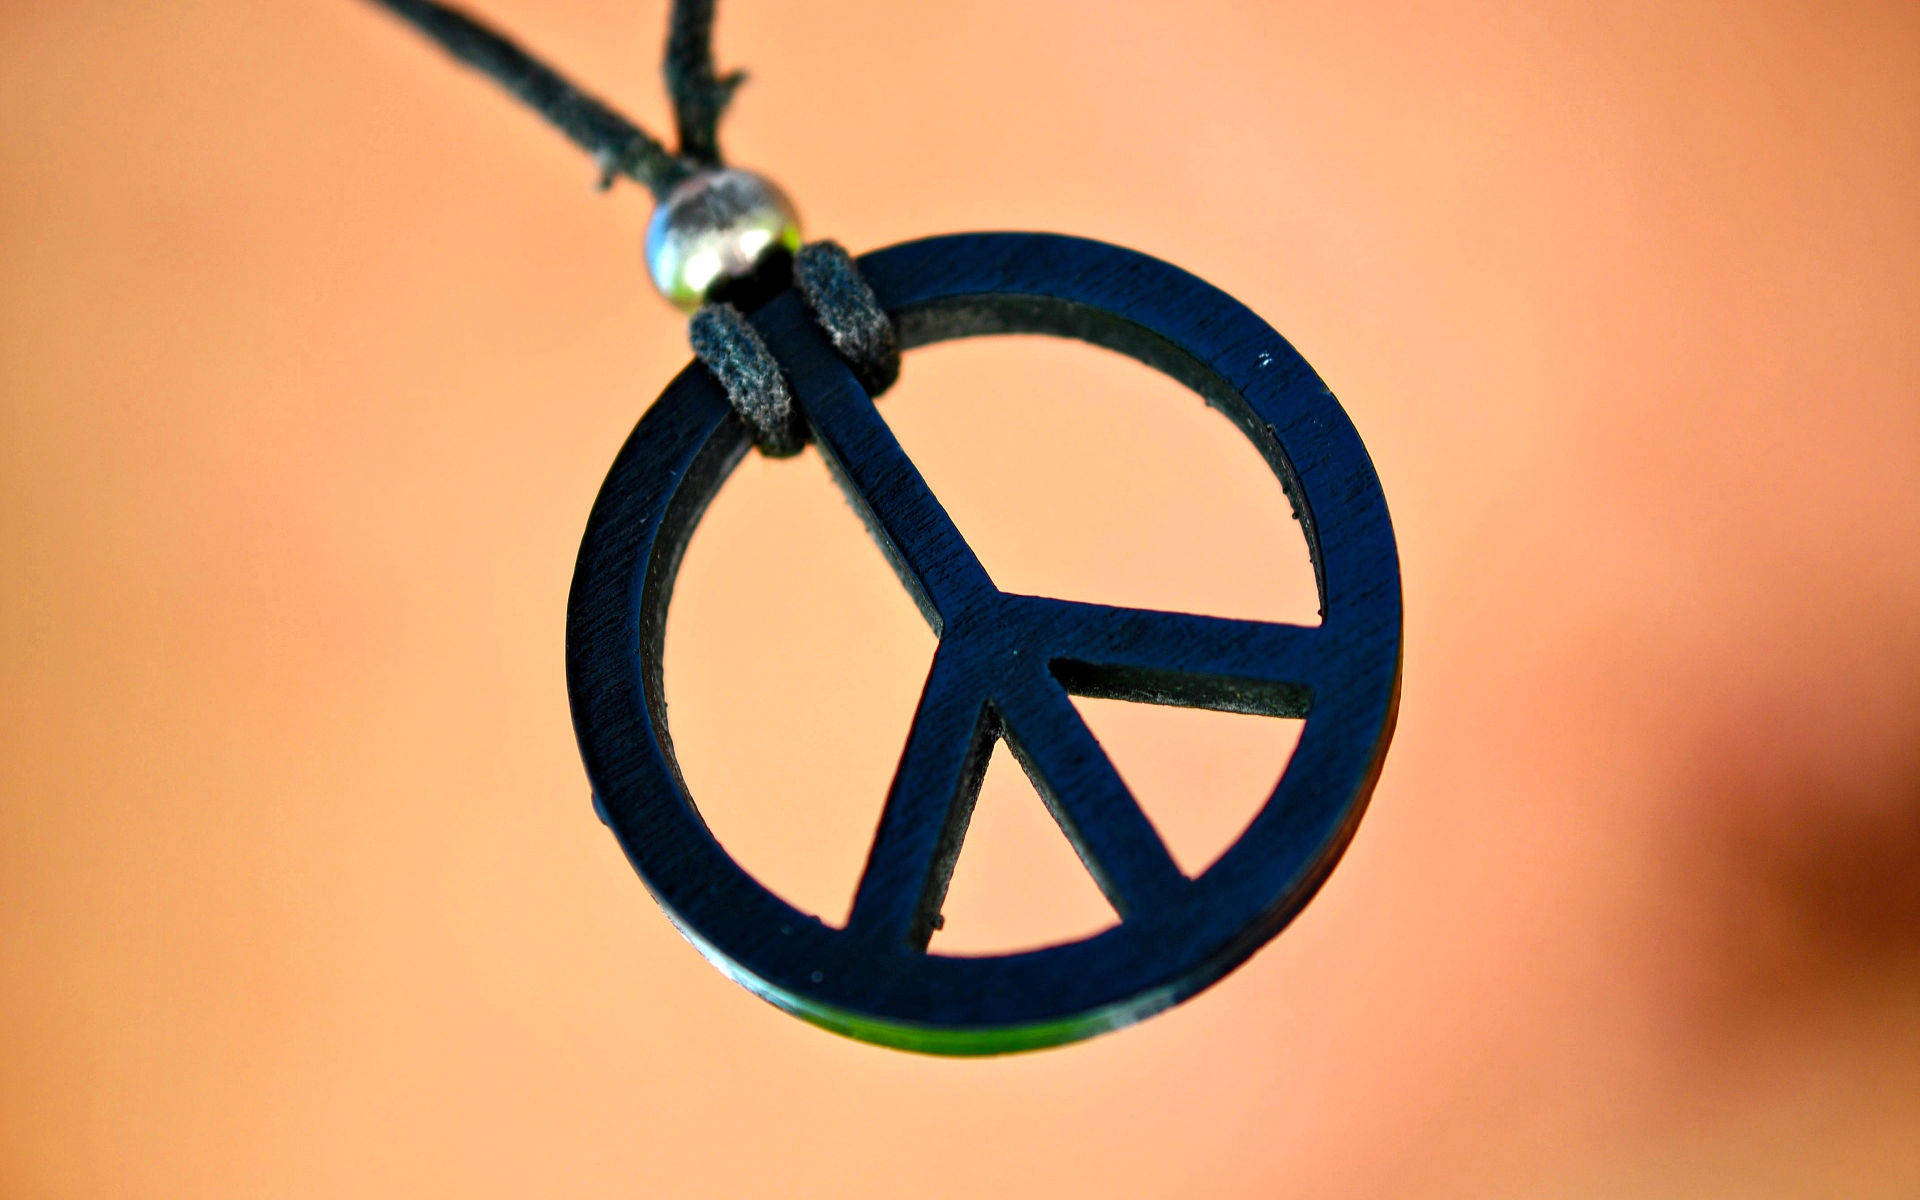 Peace Symbol Pendant